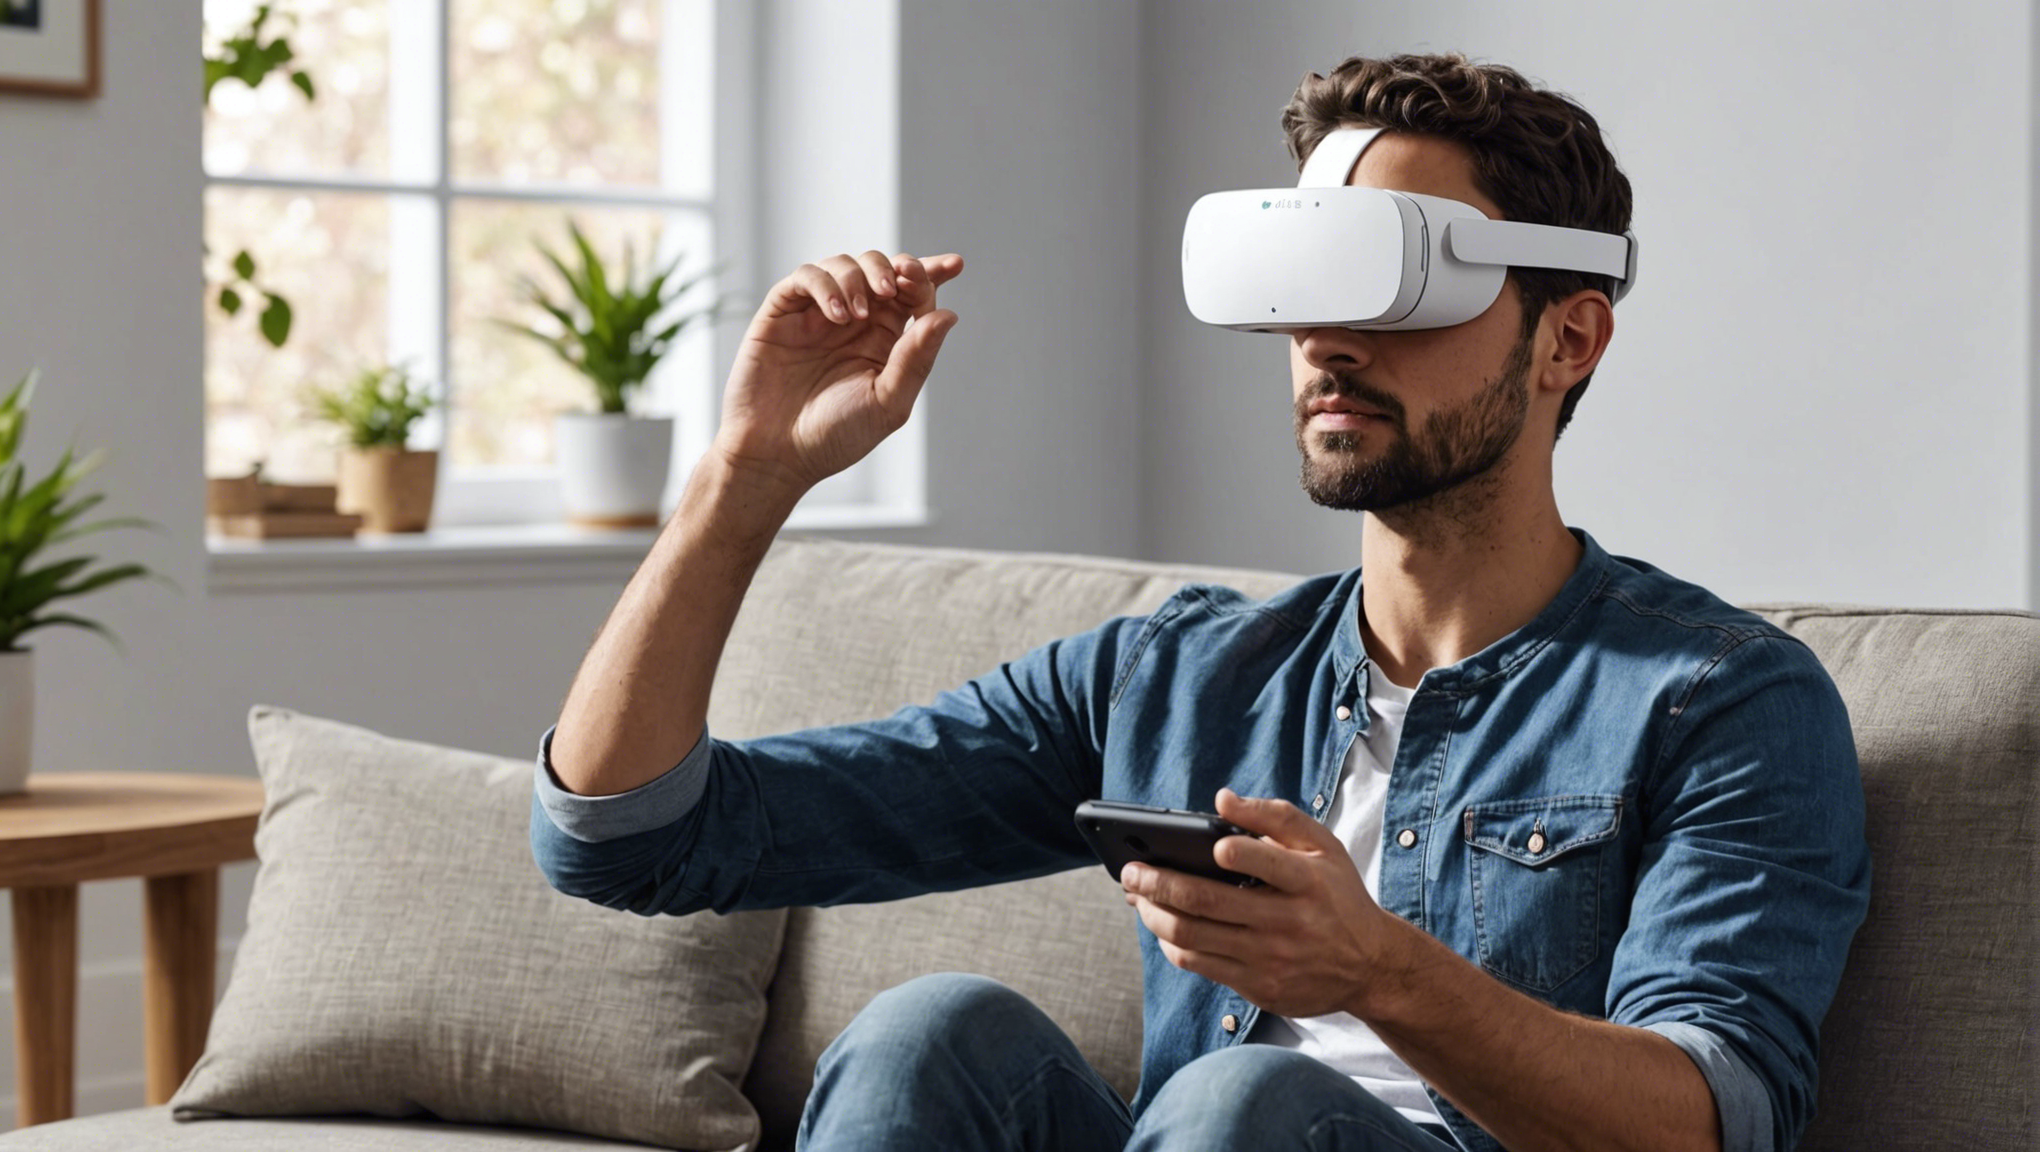 découvrez comment google daydream réinvente la réalité virtuelle avec une expérience immersive et captivante. explorez un nouveau monde de divertissement et d'innovation avec cette technologie de pointe.